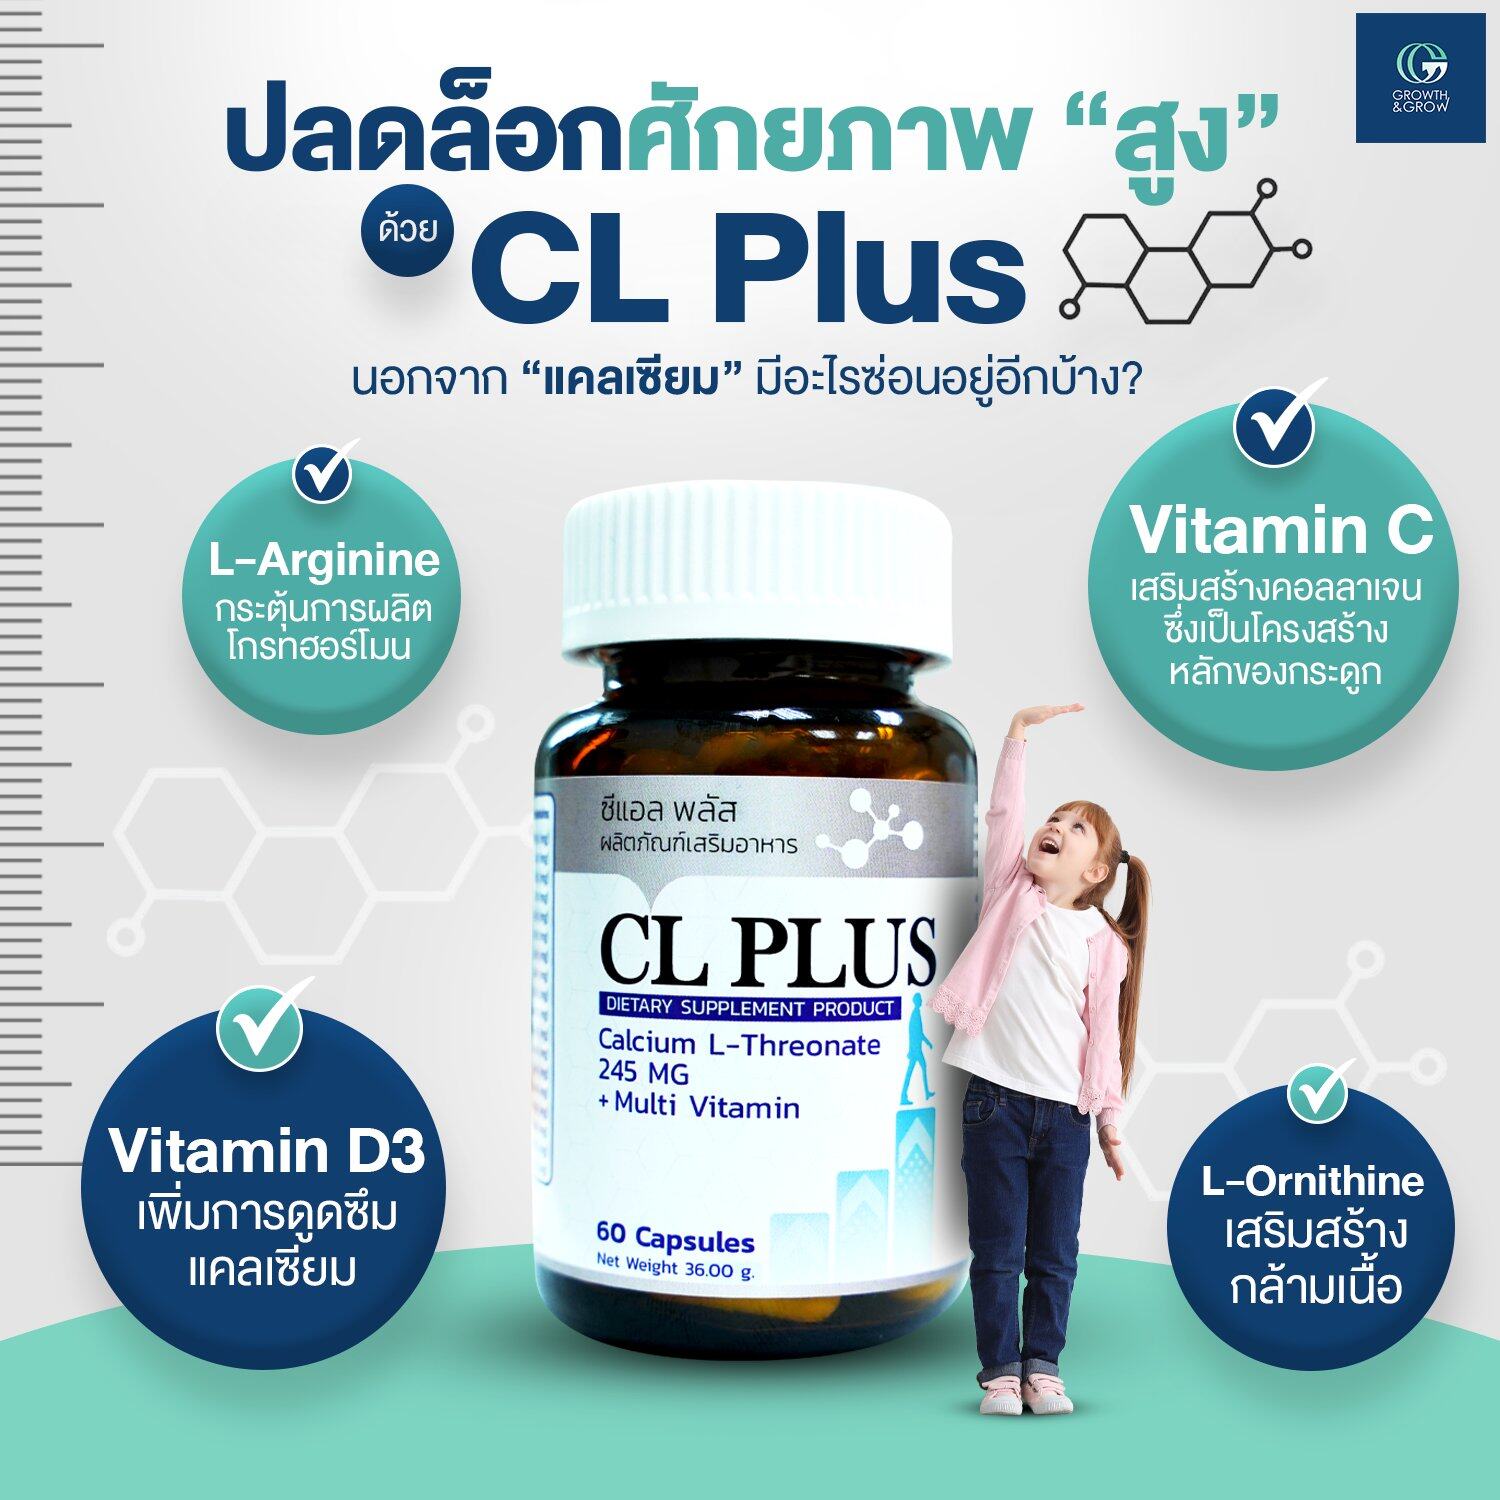 ซีแอล พลัส CL Plus ผลิตภัณฑ์เสริมอาหาร แคลเซียมสูตรของคลินิกพัฒนาการส่วนสูง Growth & Grow Medical Center